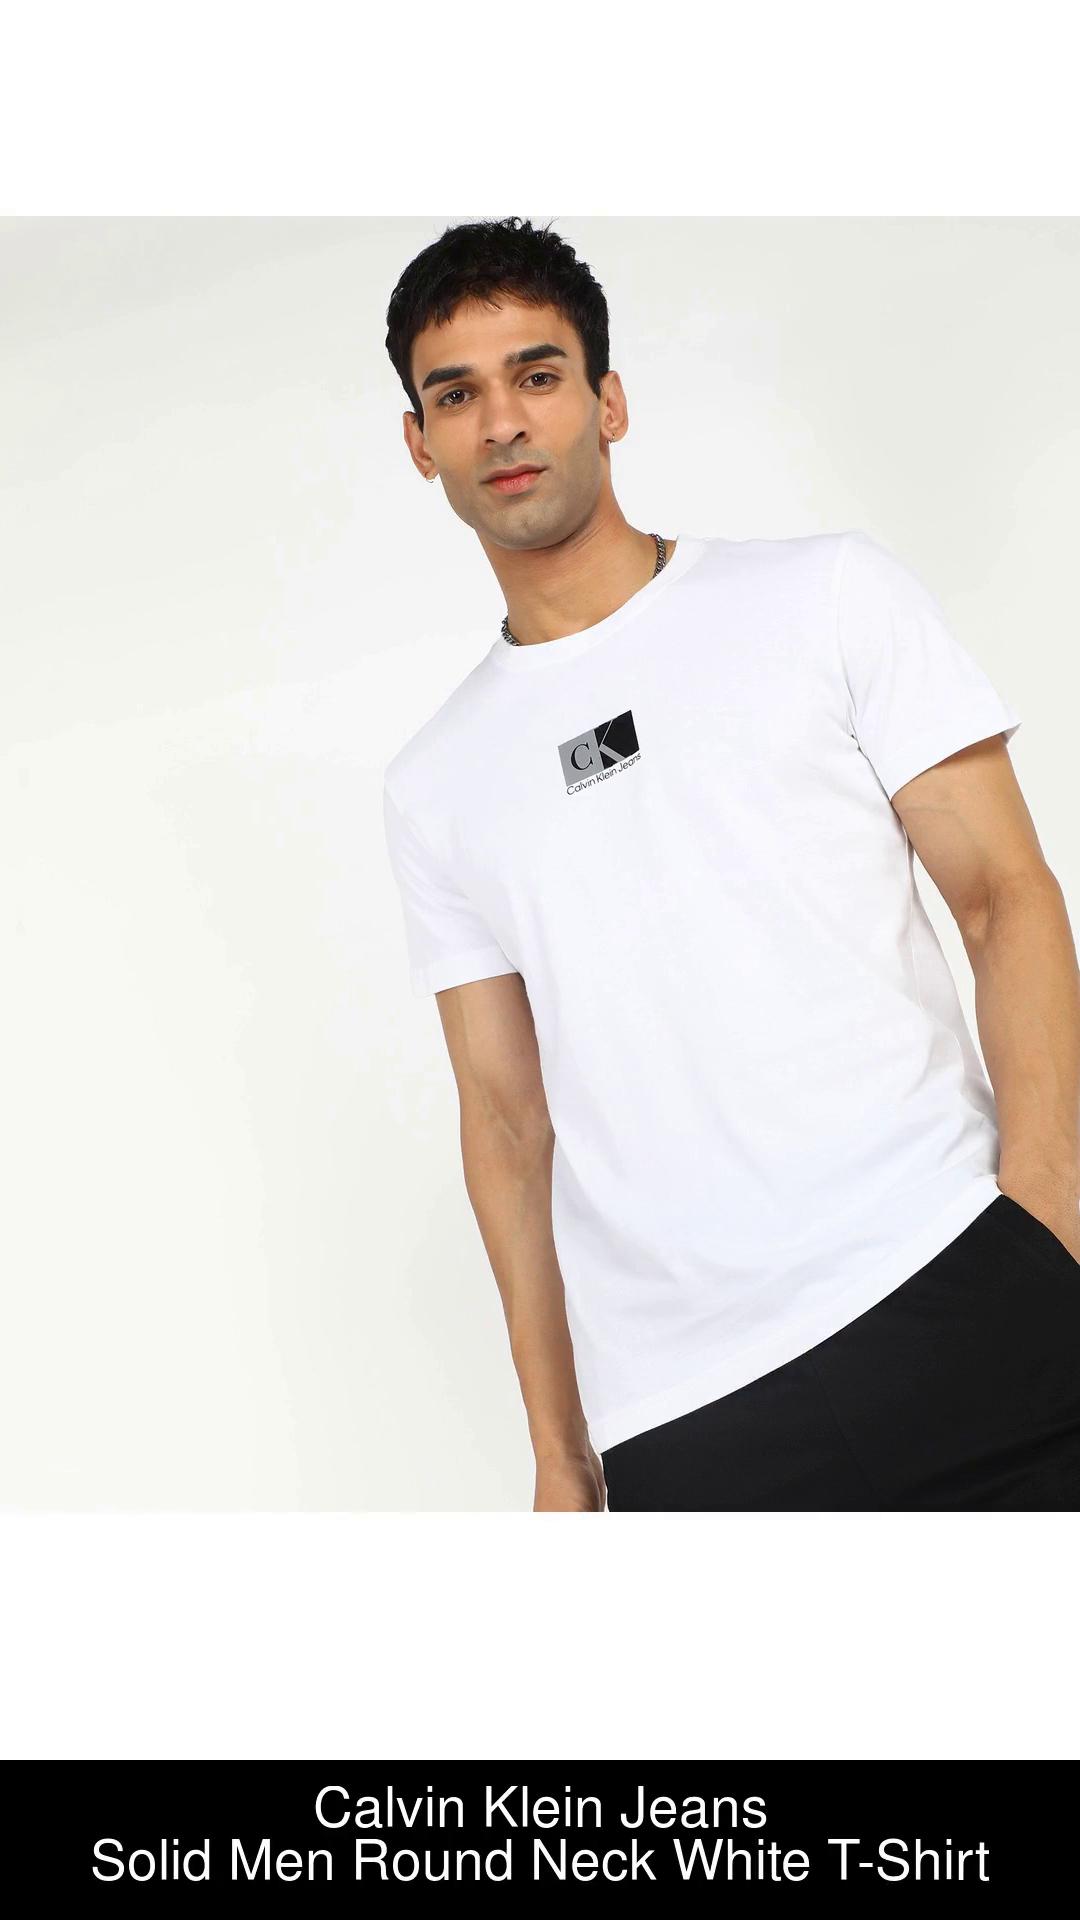 Calvin Klein Jeans Solid Men Round Neck White T-Shirt